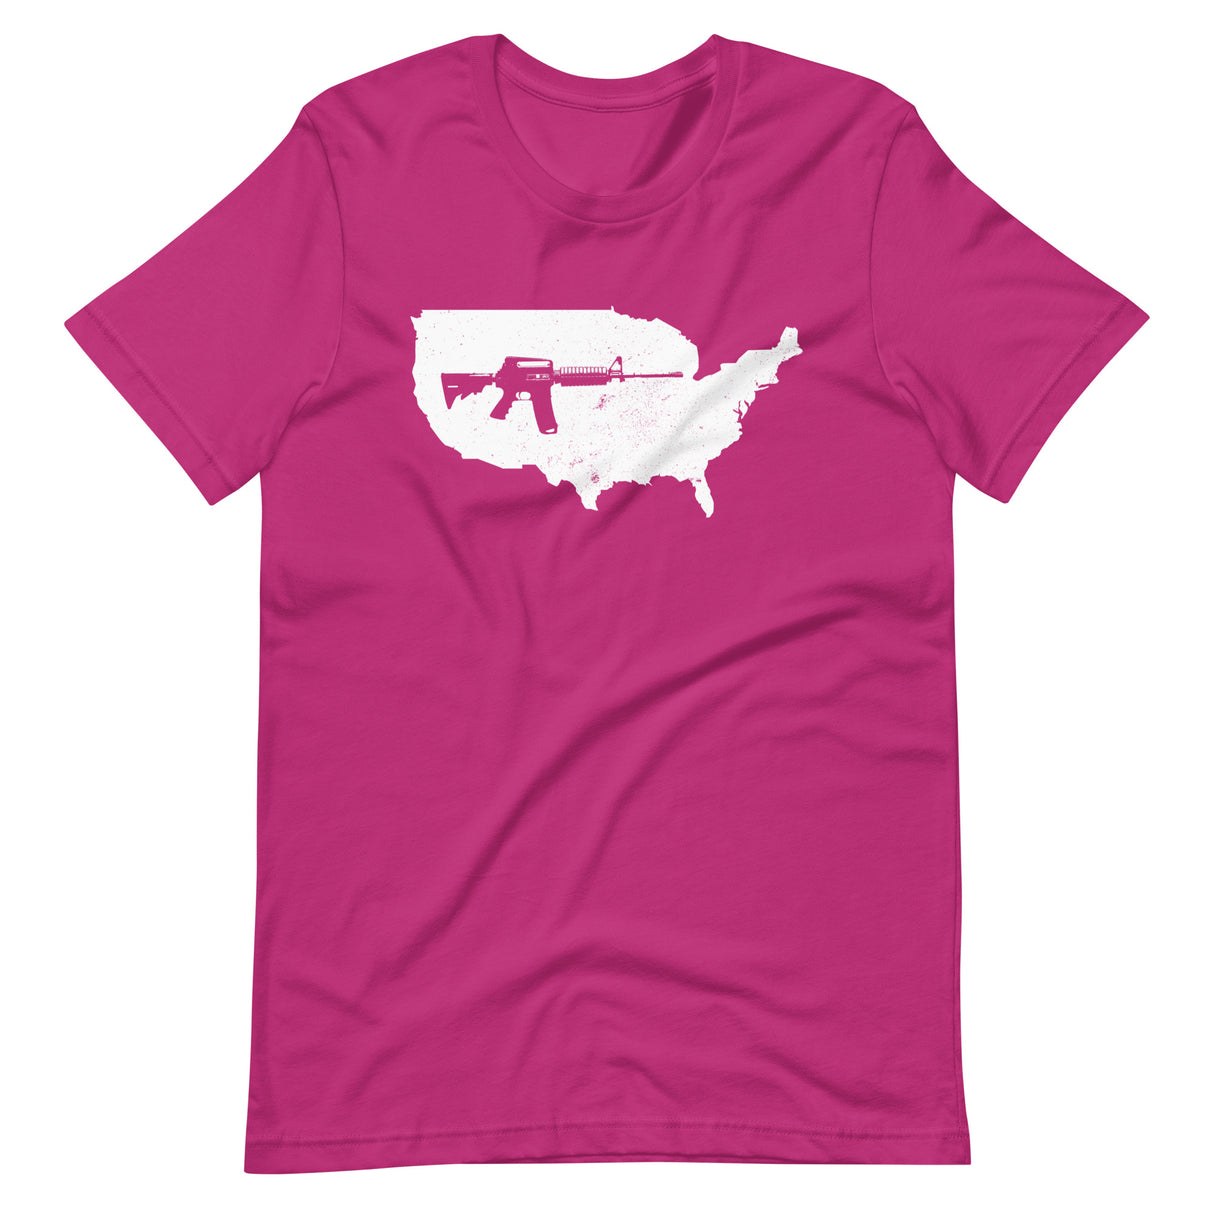 AR-15 USA Shirt - Libertarian Country